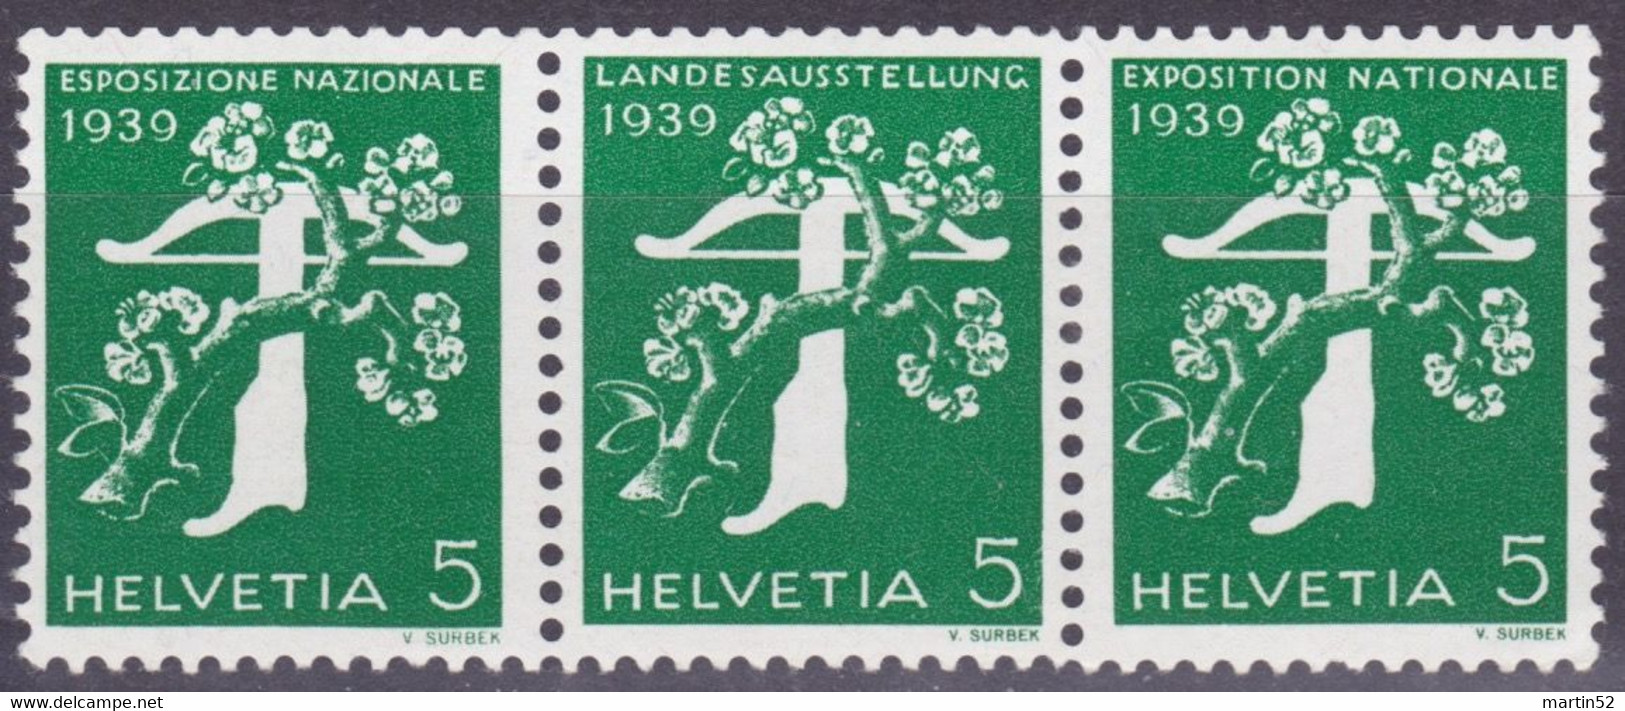 Schweiz Suisse 1939: Zusammendruck Se-tenant Zu Z25c Mi W12 ** Mit Nr. Avec N° L7295 Postfrisch MNH (Zumstein CHF 21.00) - Francobolli In Bobina